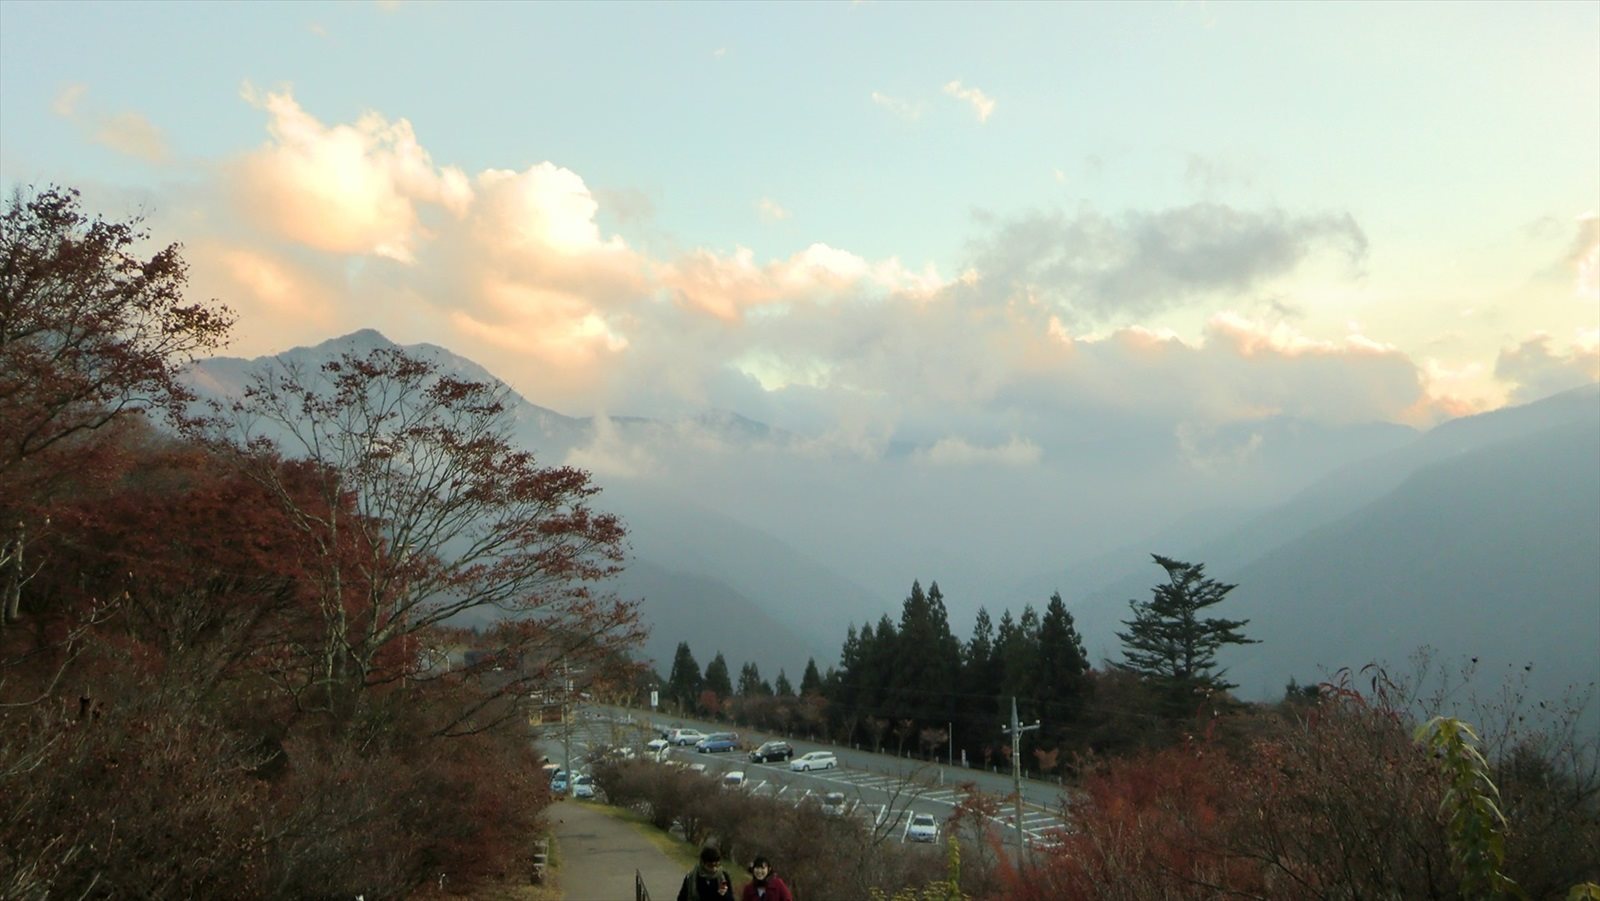 三峯神社の参道から見える雲取山